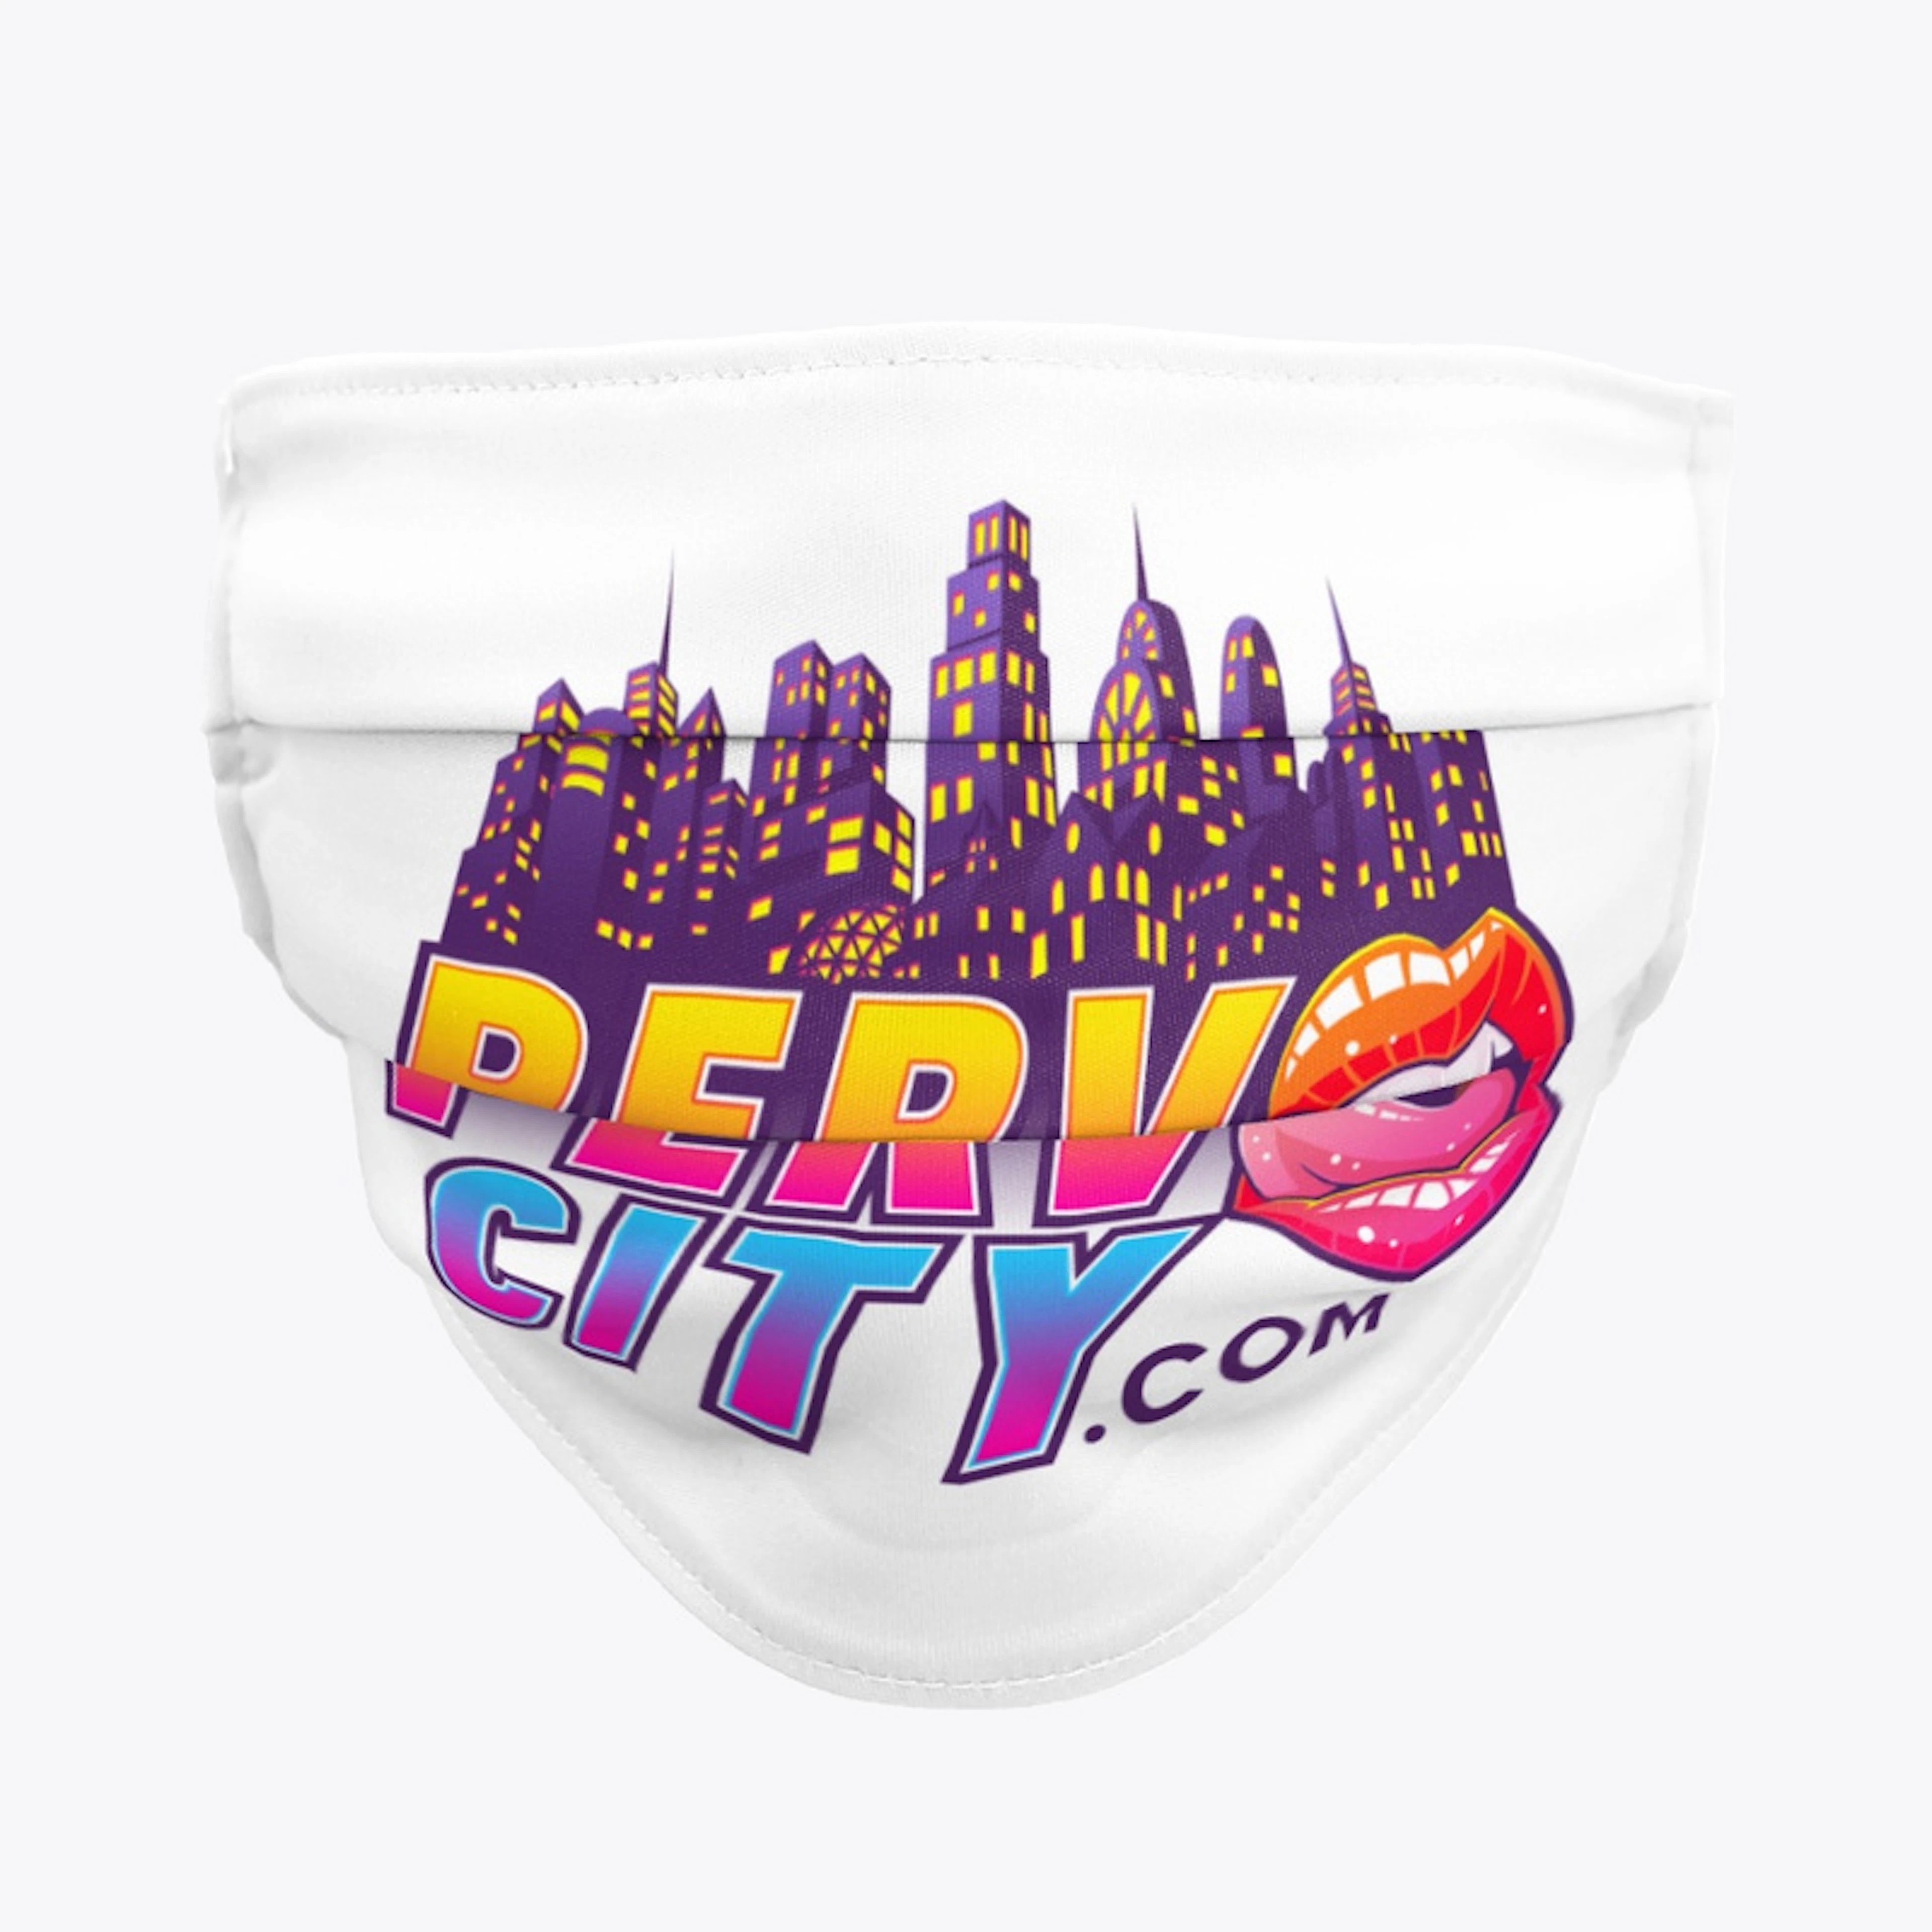 Perv City Store